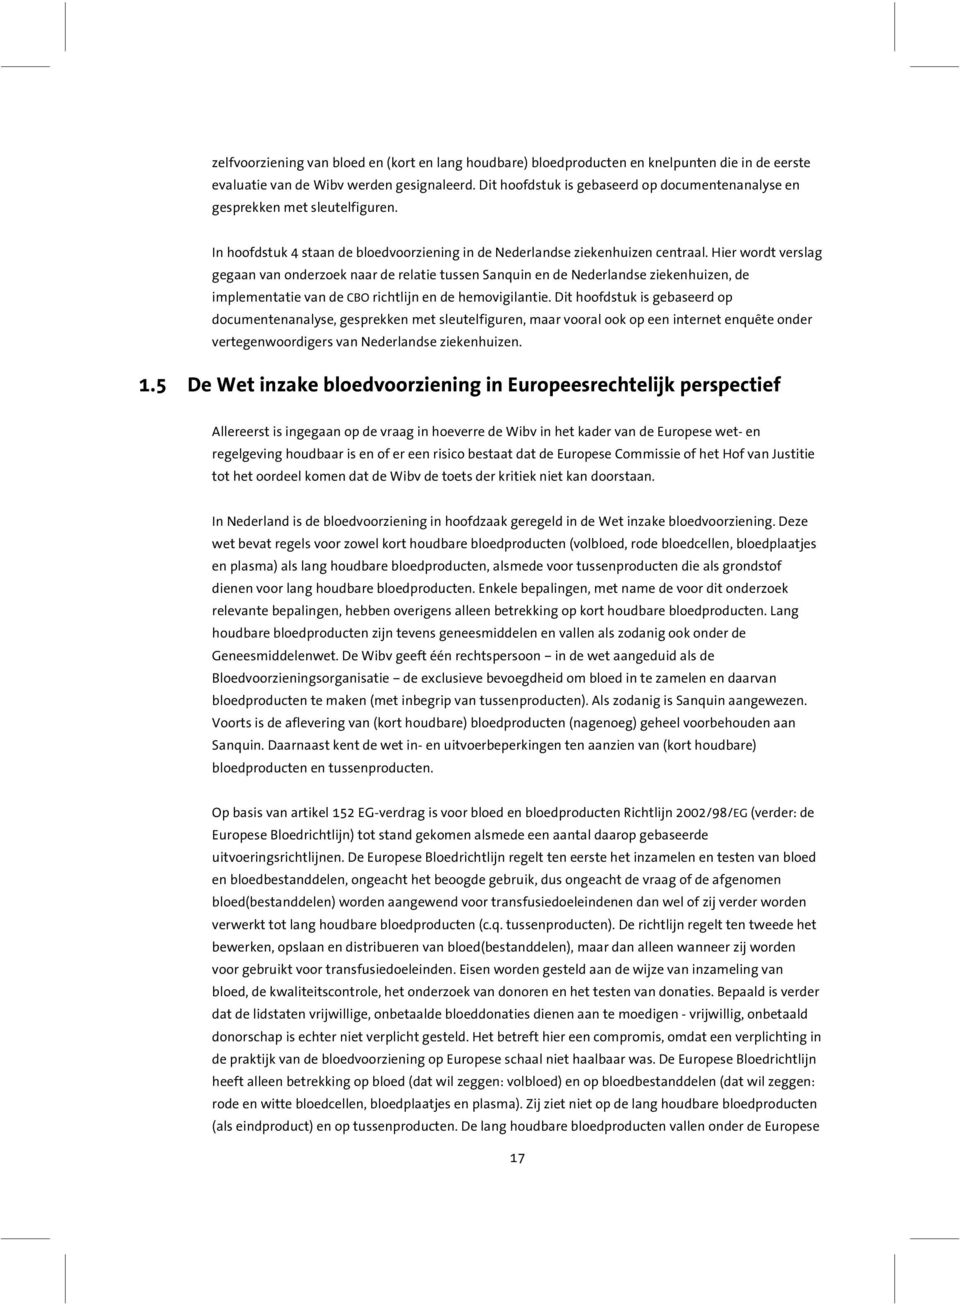 Hier wordt verslag gegaan van onderzoek naar de relatie tussen Sanquin en de Nederlandse ziekenhuizen, de implementatie van de CBO richtlijn en de hemovigilantie.